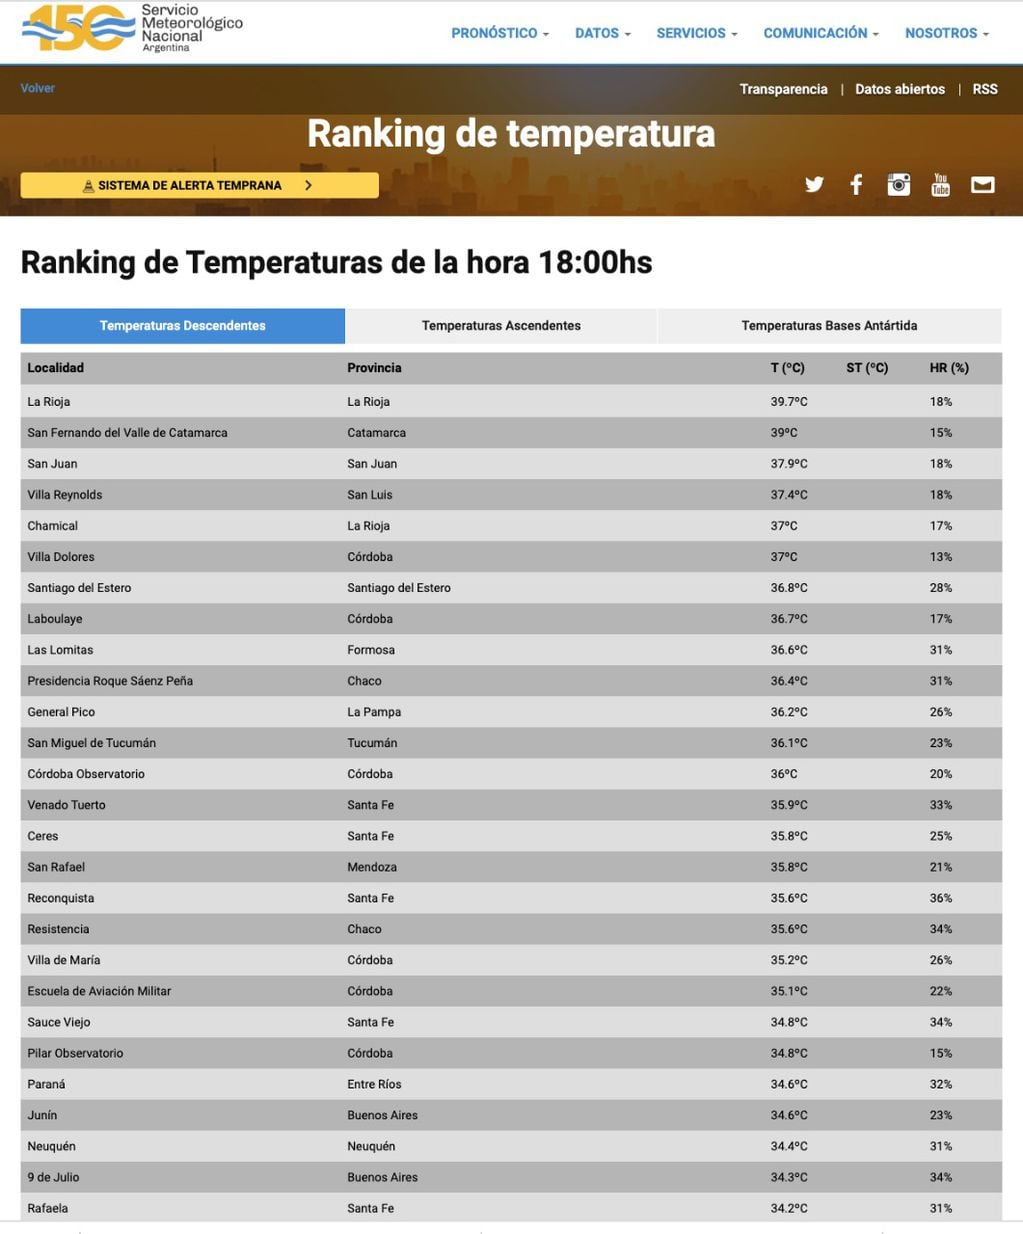 Ranking de temperaturas del Servicio Meteorológico Nacional a las 18 horas.